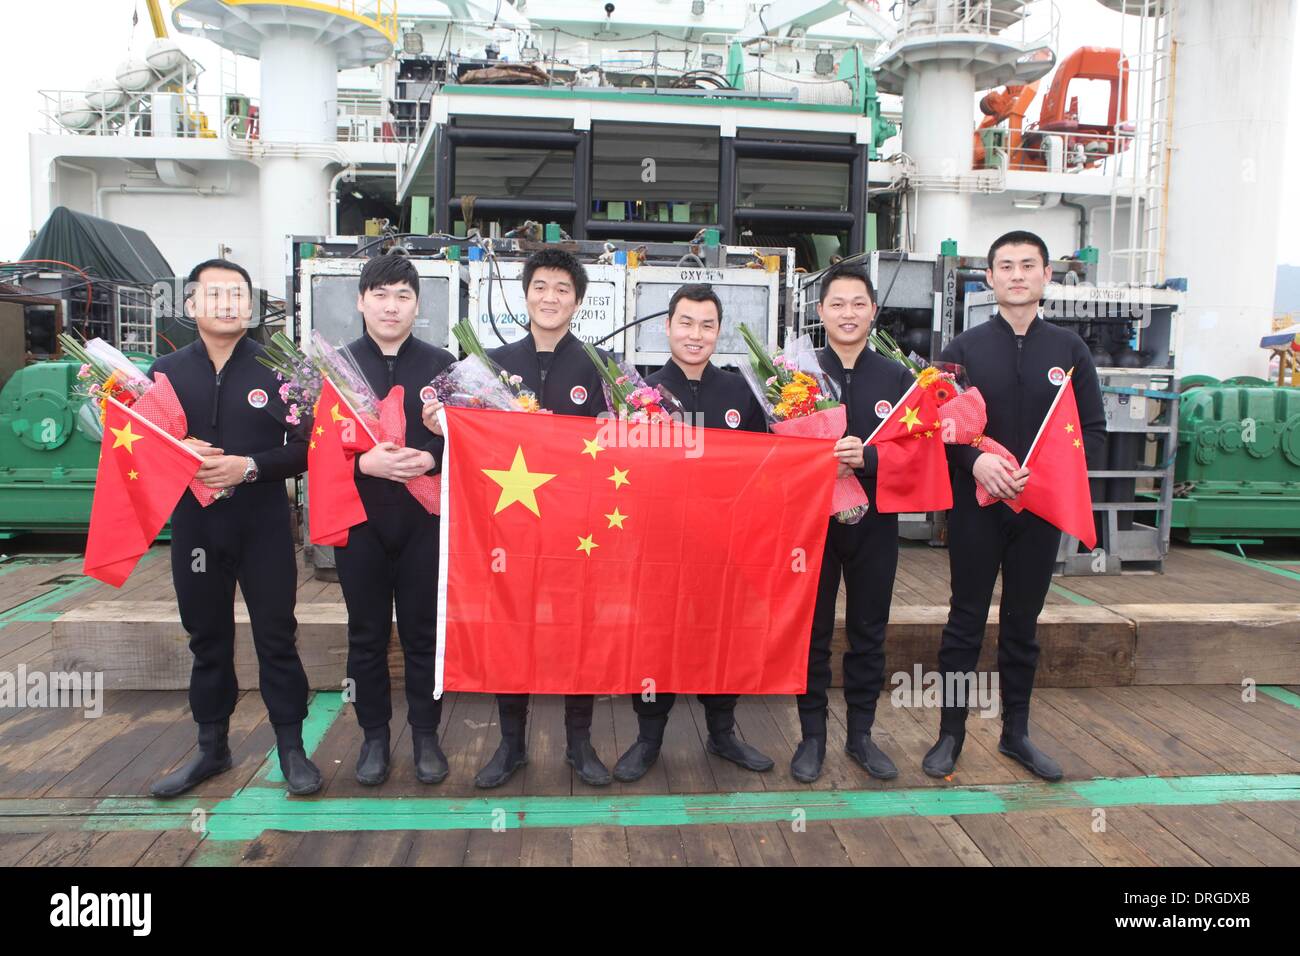 (140125)--SHENZHEN, 25. Januar 2014 (Xinhua)--Sic Taucher Pose für ein Gruppenfoto nach dem coming out sicher von einer lebendigen Kammer auf einem Schiff an einem Dock in Shenzhen, Guangdong Provinz Süd-China, 25. Januar 2014 verankert. Eine Taucherglocke nahm die Taucher zu erreichen eine Tiefe von 313,5 m unter dem Südchinesischen Meer am 12. Januar. Dann kehrte die Taucher aus tiefem Wasser in der lebenden Kammer auf ihr Schiff. Nach einem Aufenthalt in der Kammer für 380 Stunden das Inertgas in ihrer Gewebeflüssigkeit auf Normaldruck zurückkehren zu lassen, kam die sechs Taucher auf Jan. 25 mit gesunden Körper Bedingungen. Diese setzen eine erfolgreiche con Stockfoto